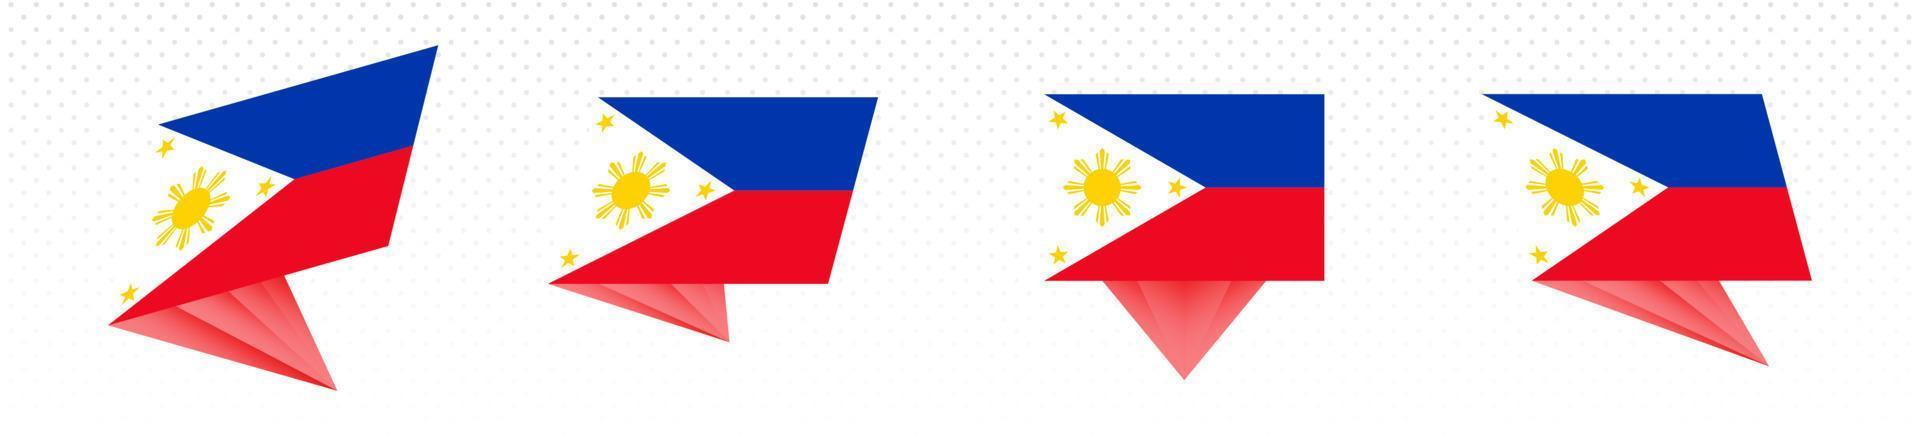 bandeira das filipinas em design abstrato moderno, conjunto de bandeiras. vetor